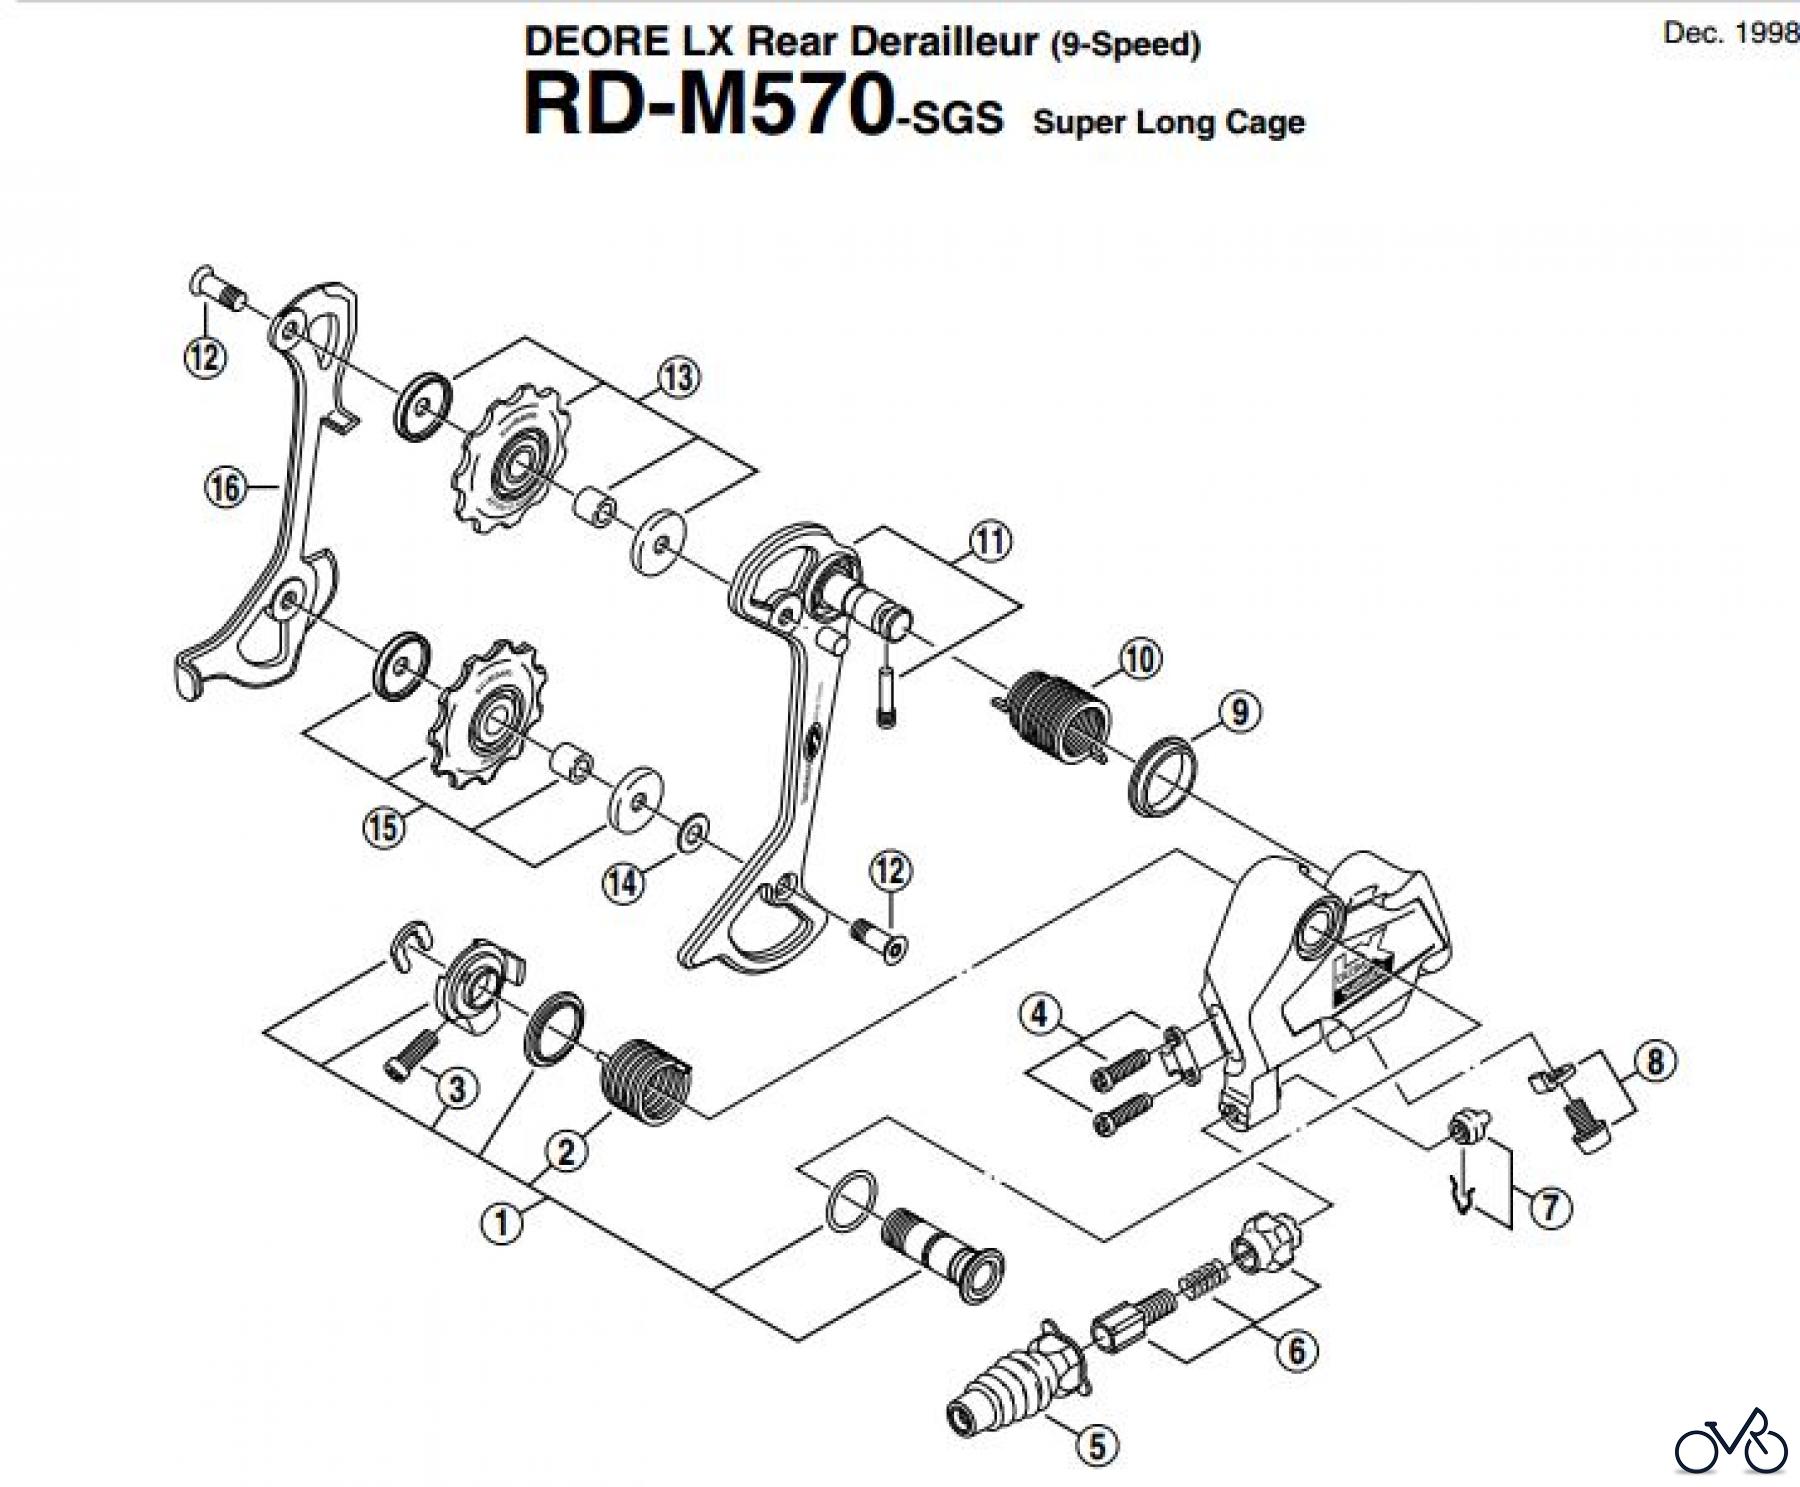  Shimano RD Rear Derailleur - Schaltwerk RD-M570-EV